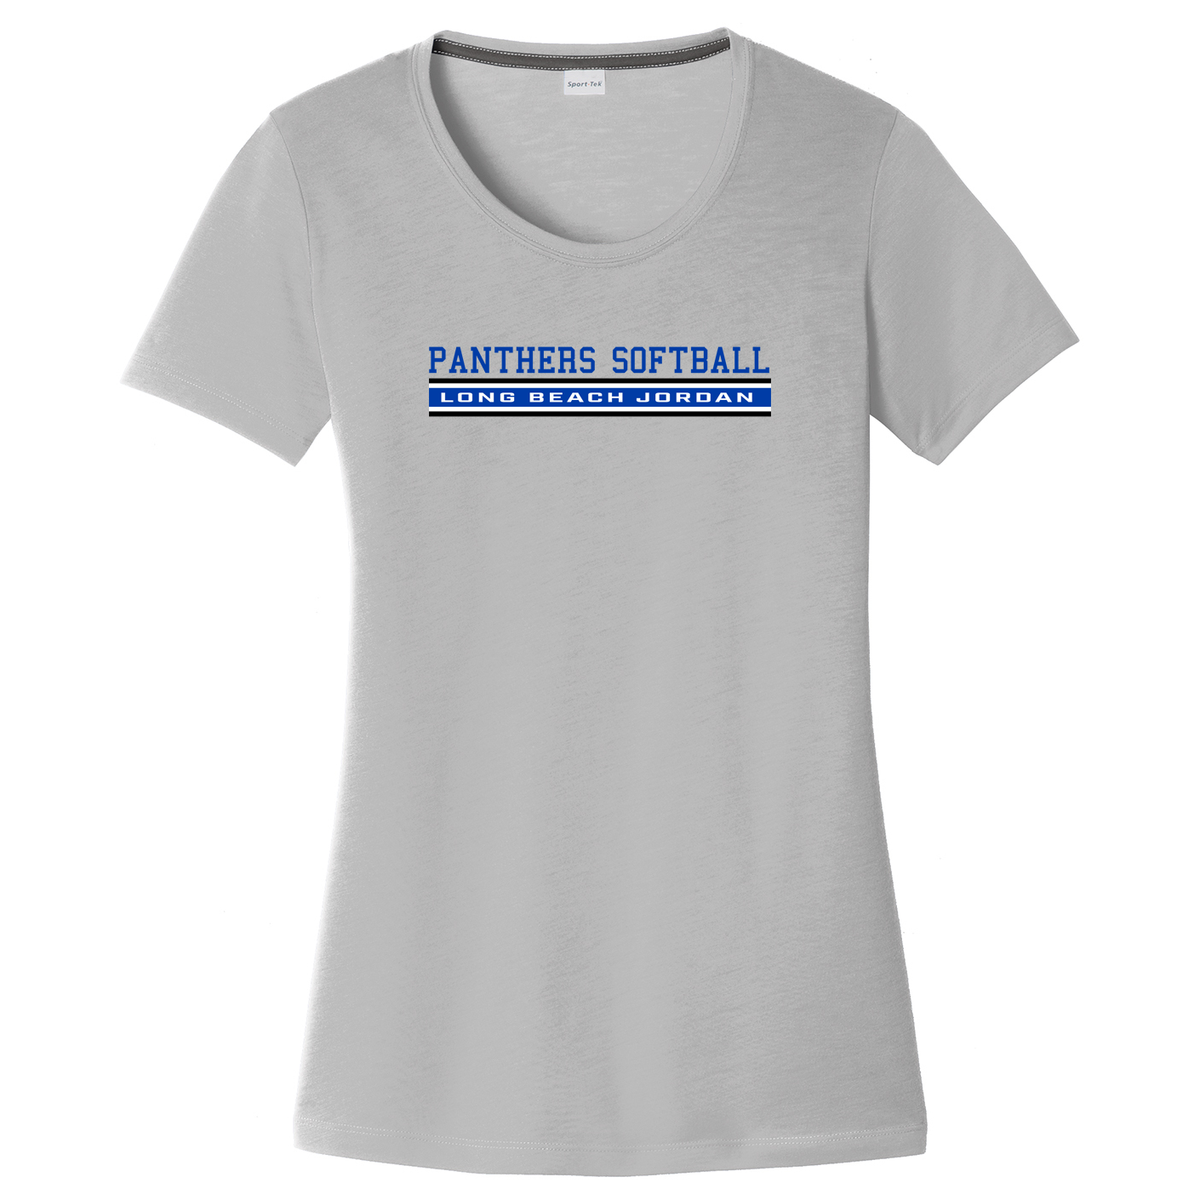 Long Beach Softball Women's CottonTouch Performance T-Shirt